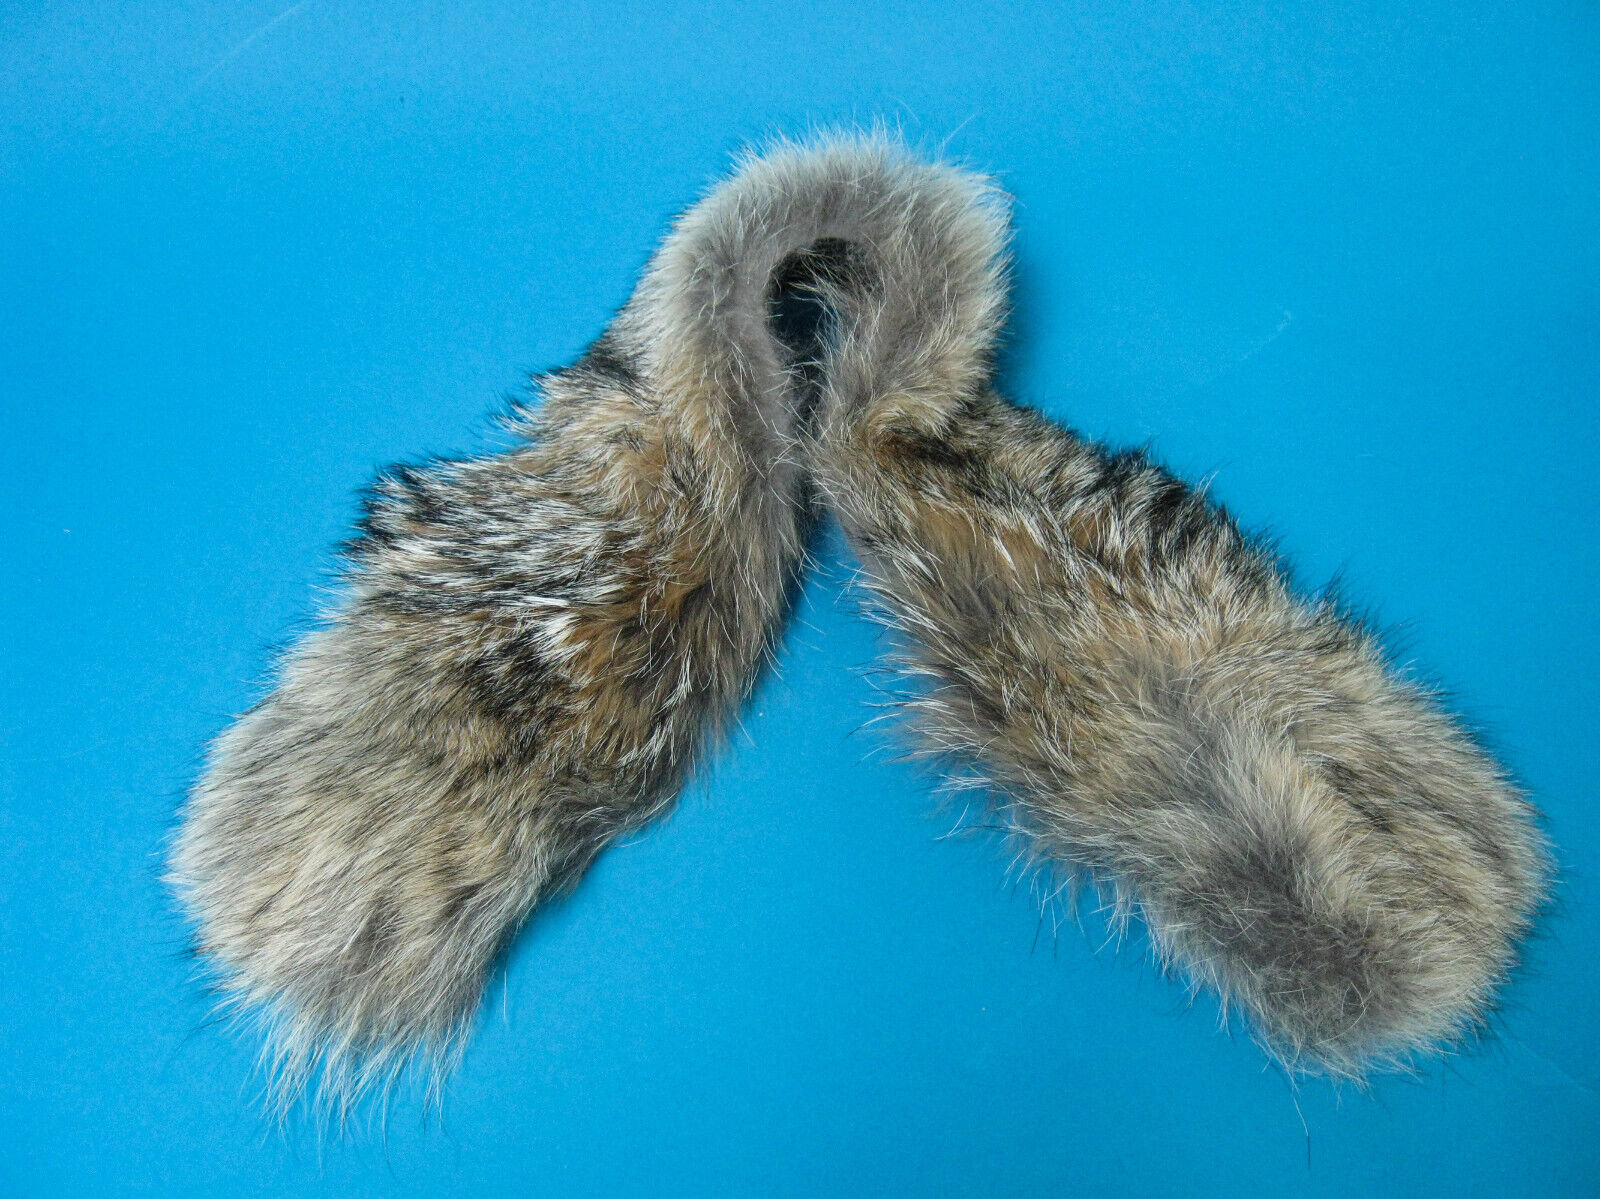 North Face Fur Trim Replacement Collar : Premium coyote fur trim